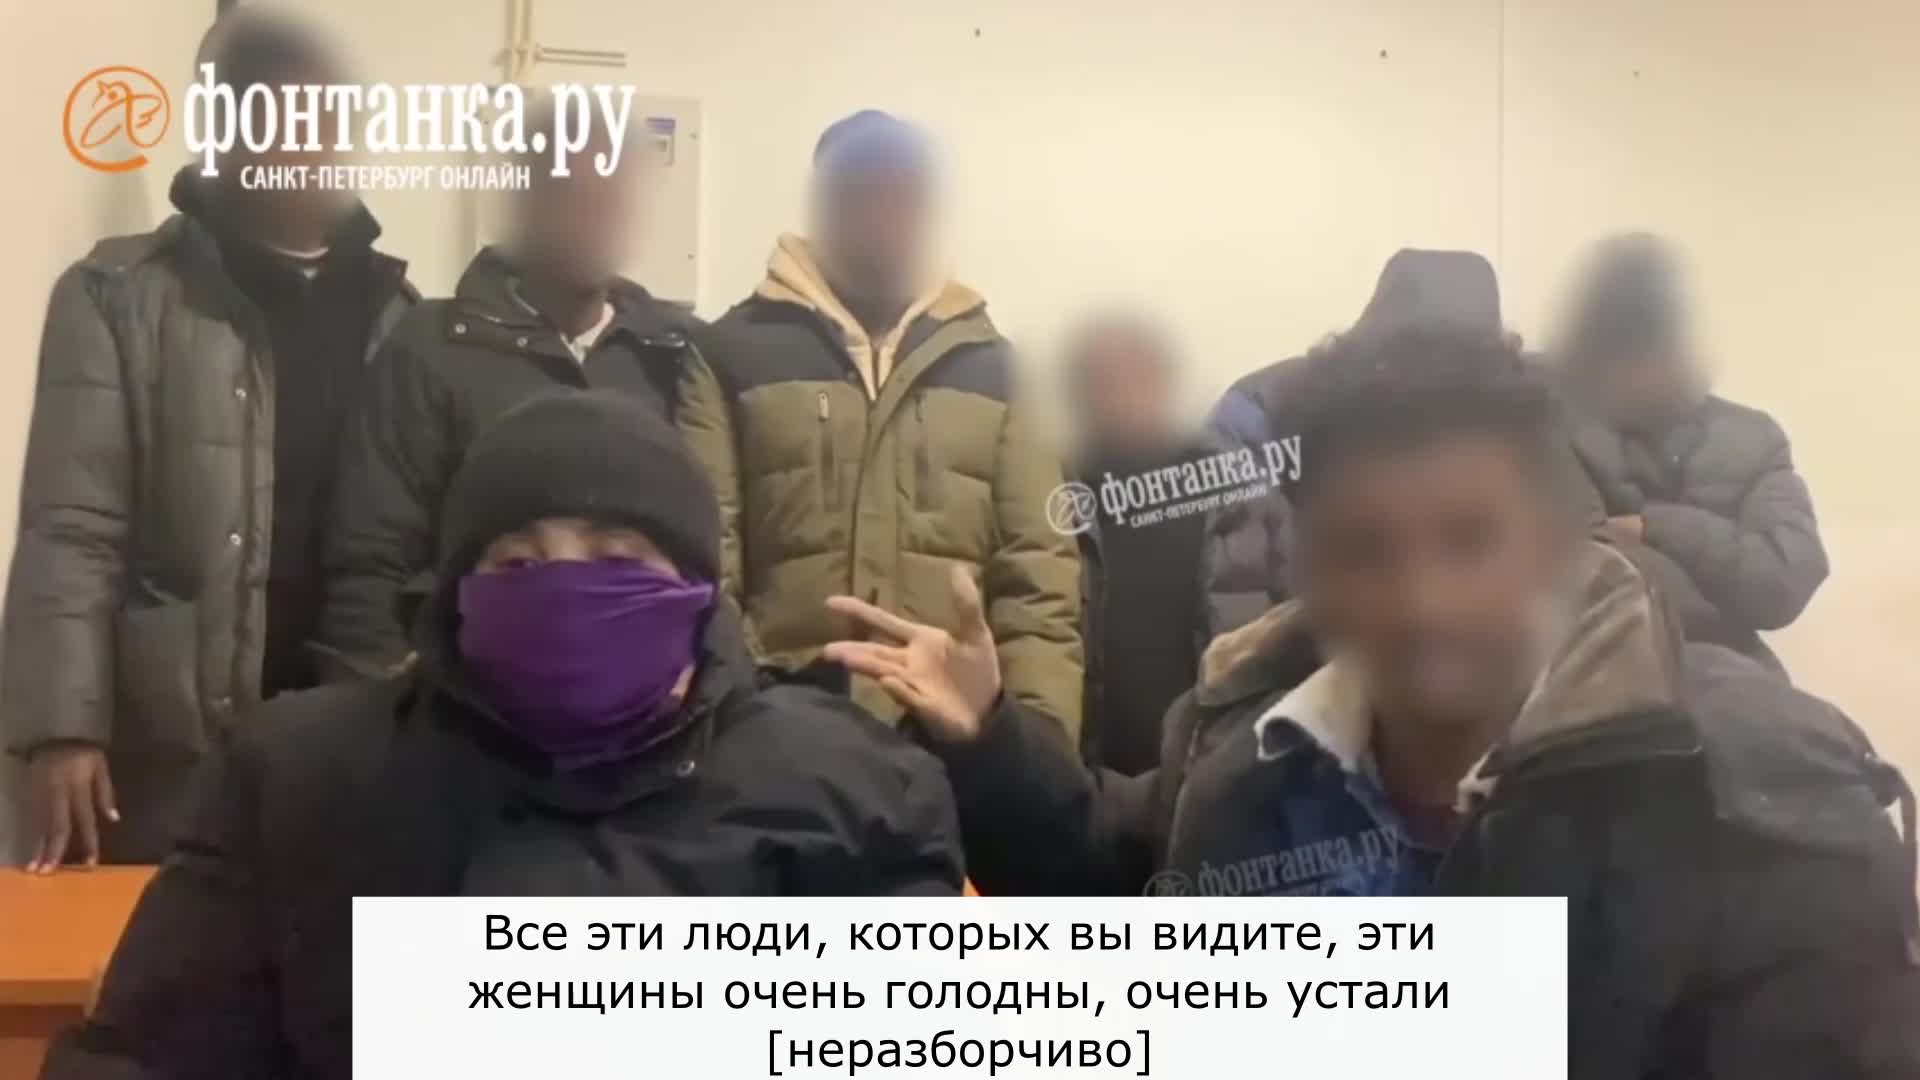 Изнасилование толпой девушки - порно видео на optnp.ru